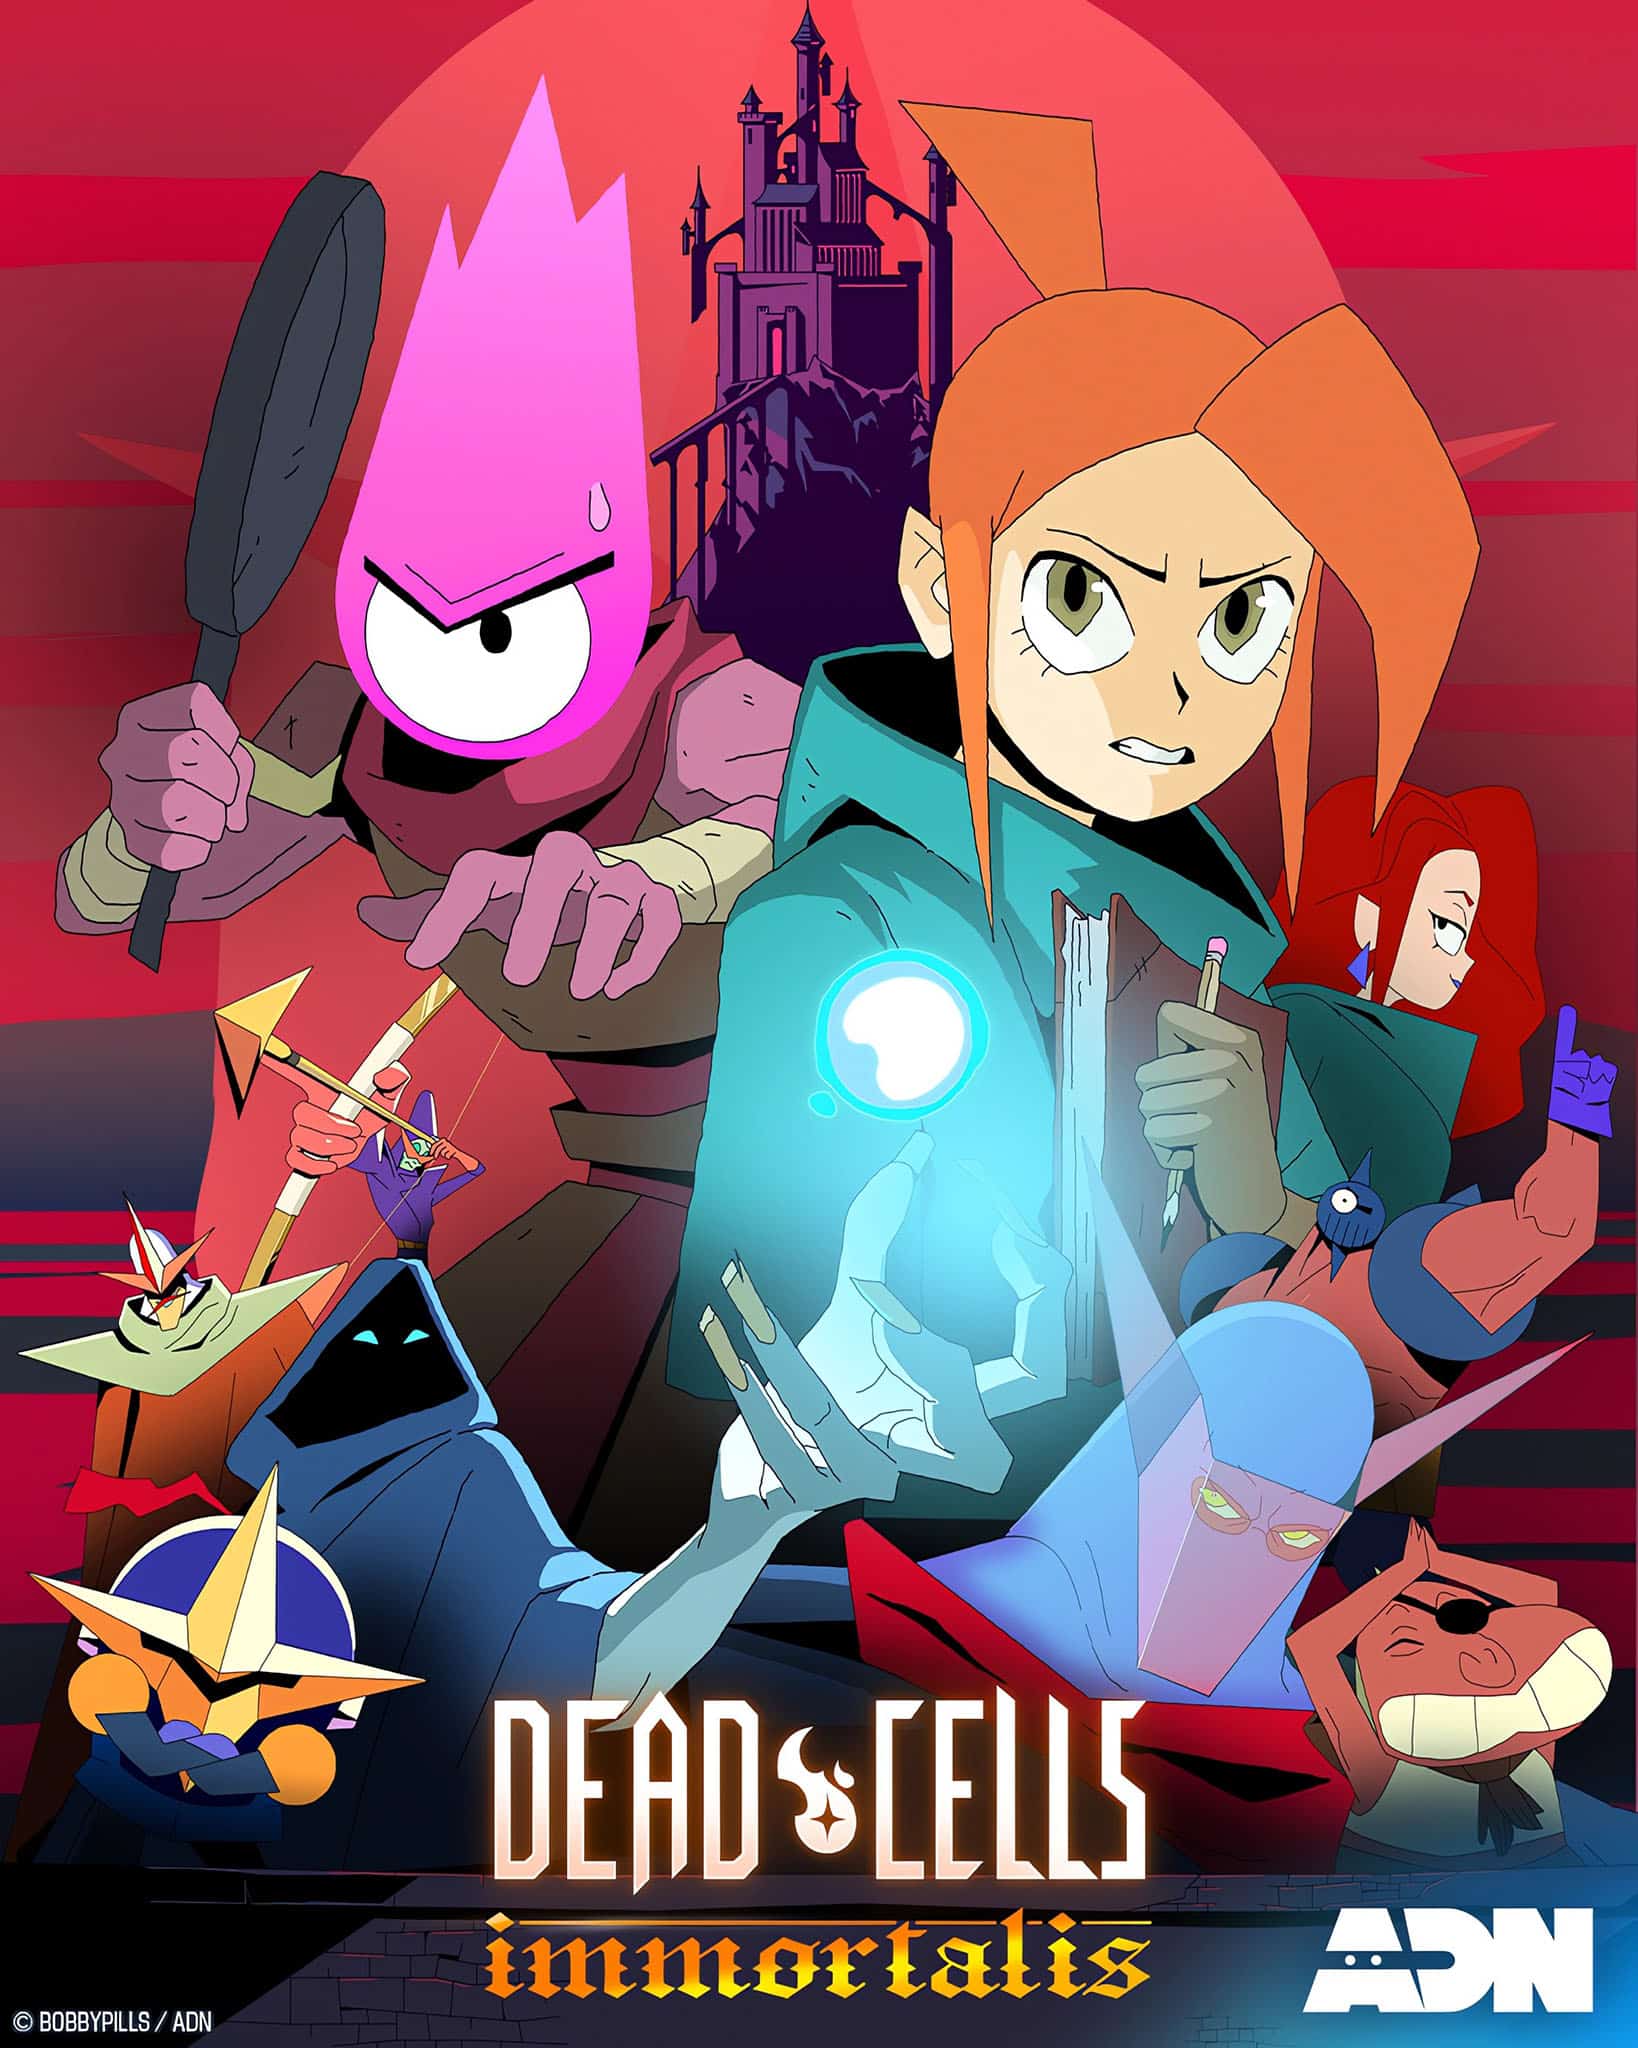 Second visuel pour l'anime Dead Cells.